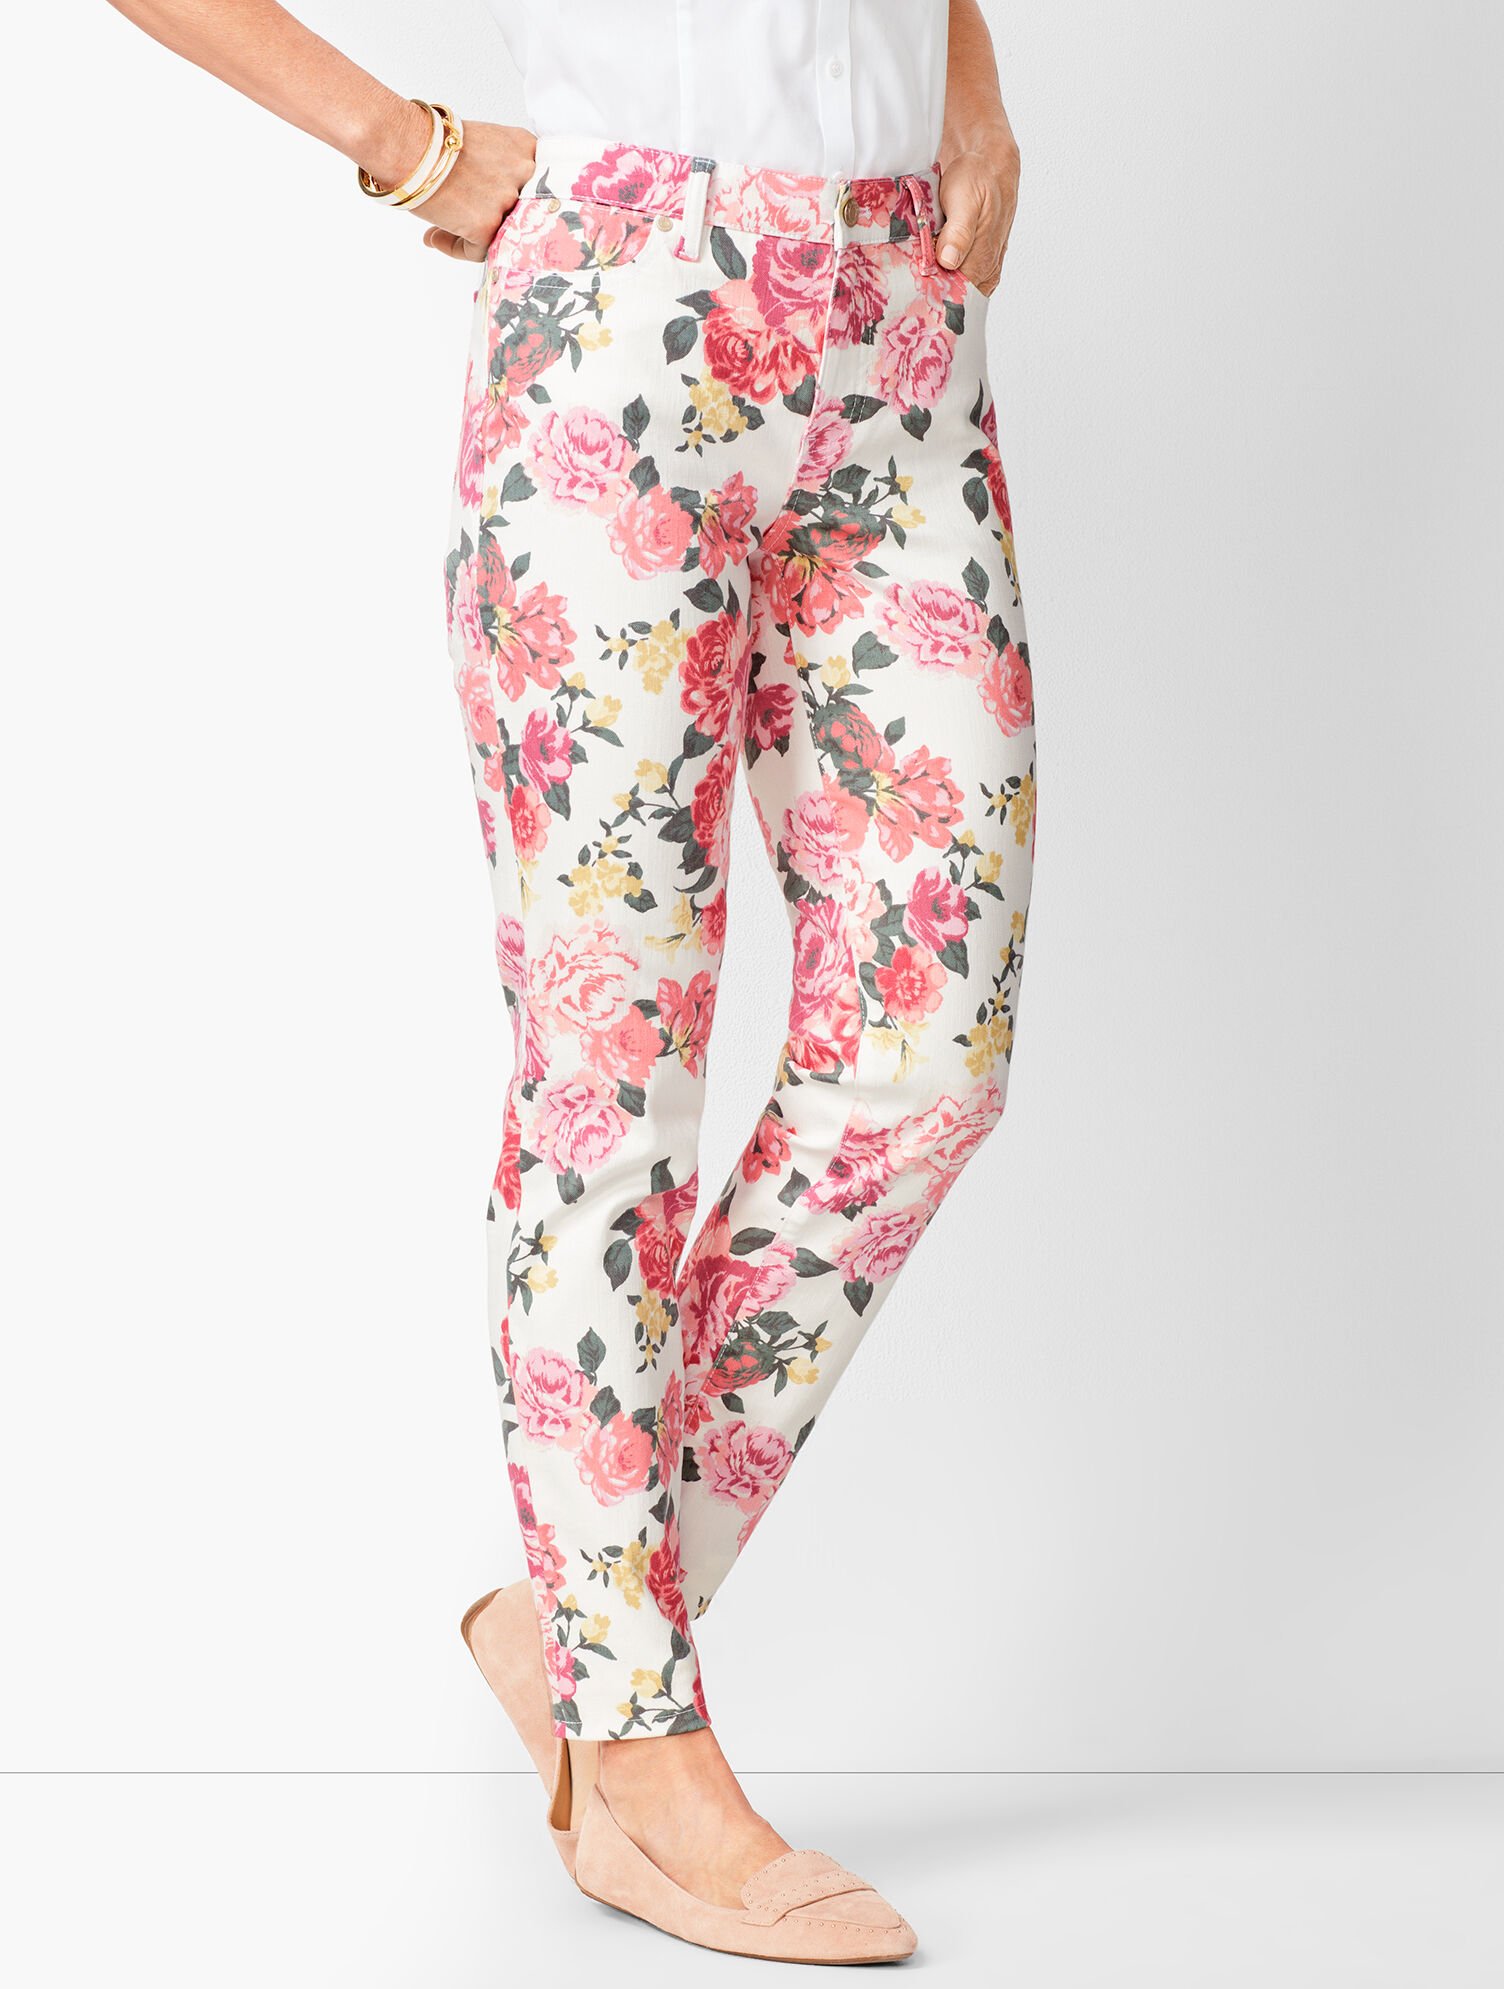 floral+pants